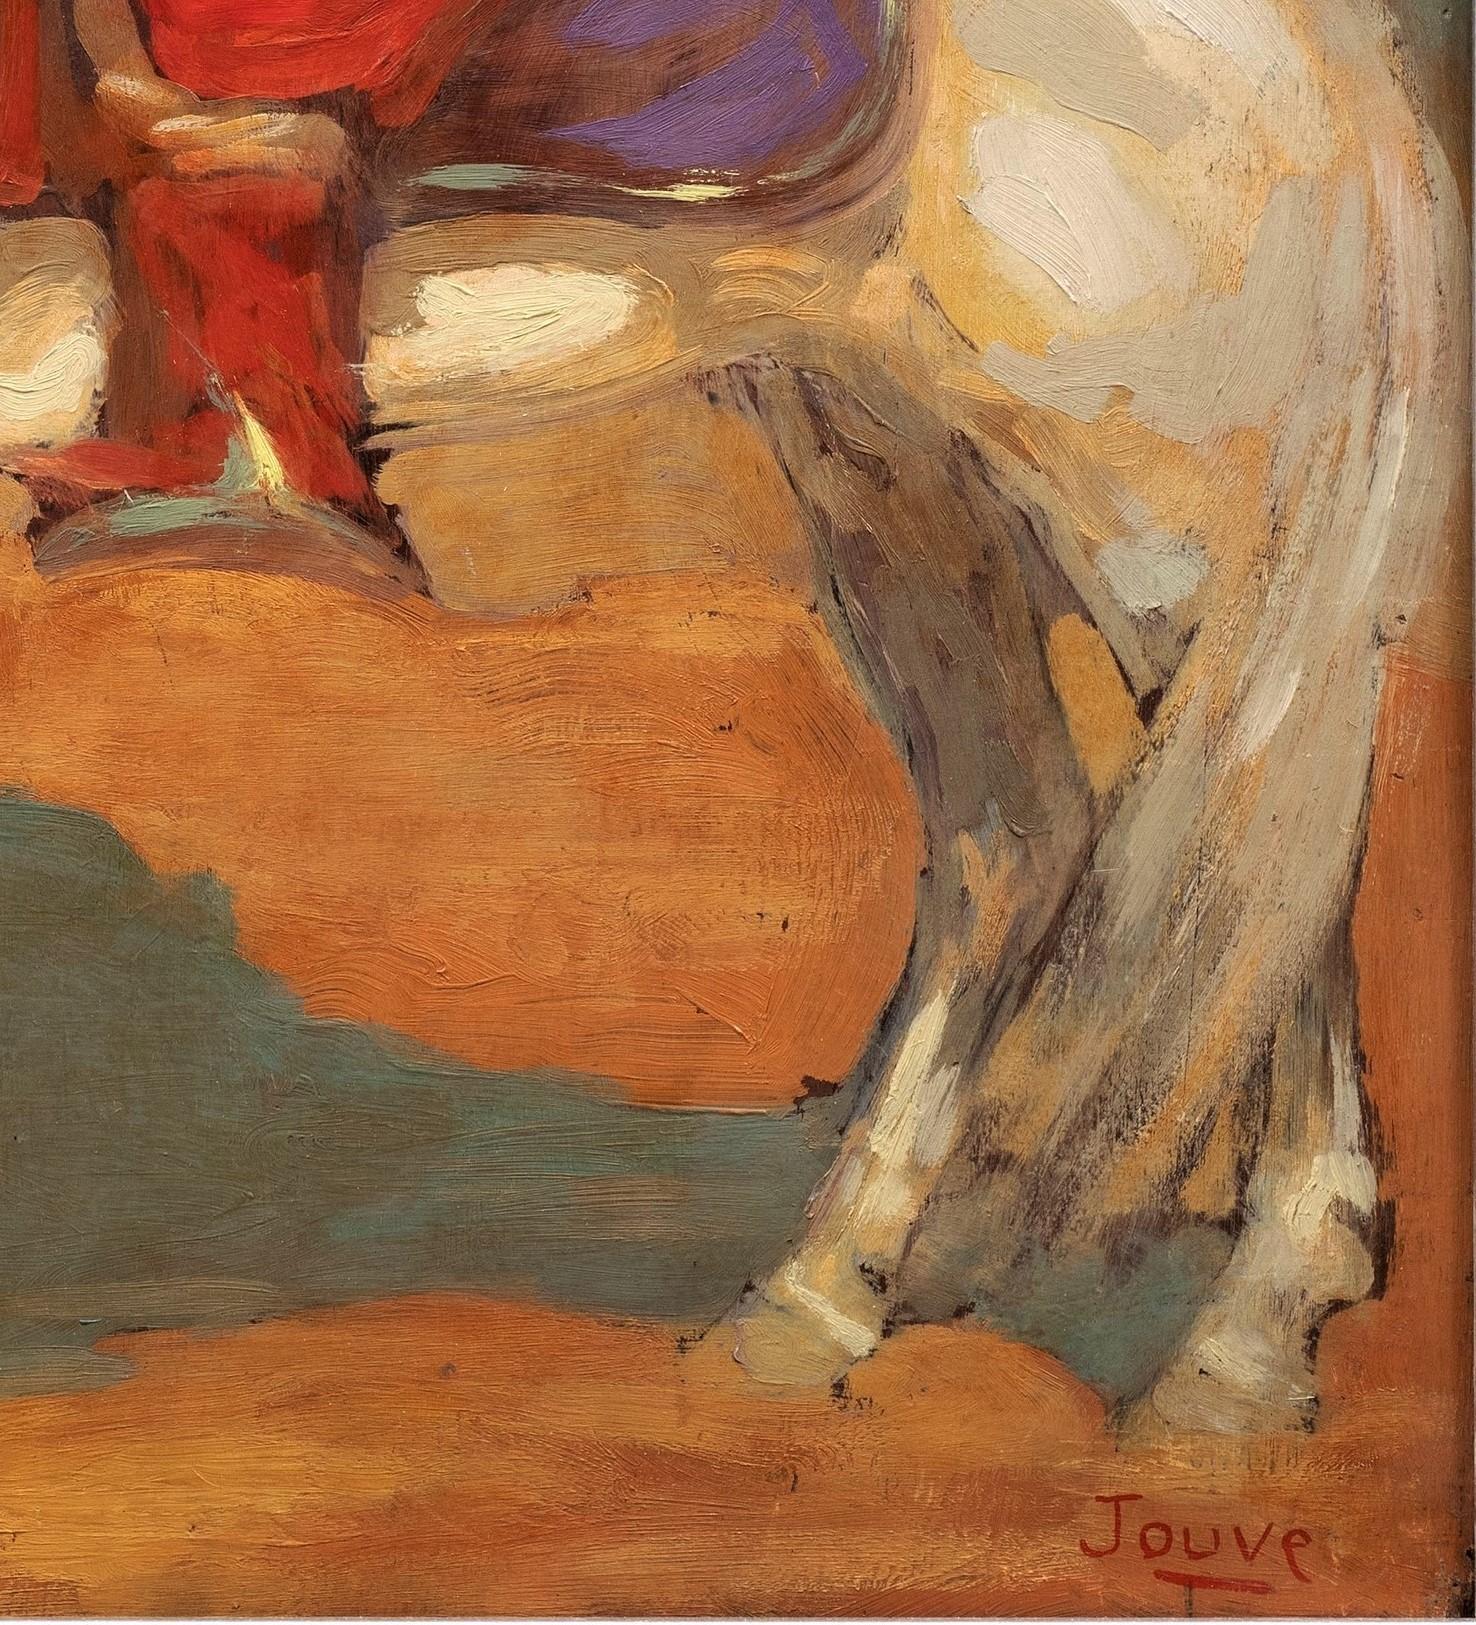 Cavalier touareg dans le désert, 1908
Paul Jouve (1878-1973)
Huile sur panneau, signée en bas à droite.
27 ½ × 24 pouces (21 ¾ × 17 1/2 cadre) pouces

L'œuvre de Paul Souve est célébrée et collectionnée depuis plus de 100 ans. Son talent était si